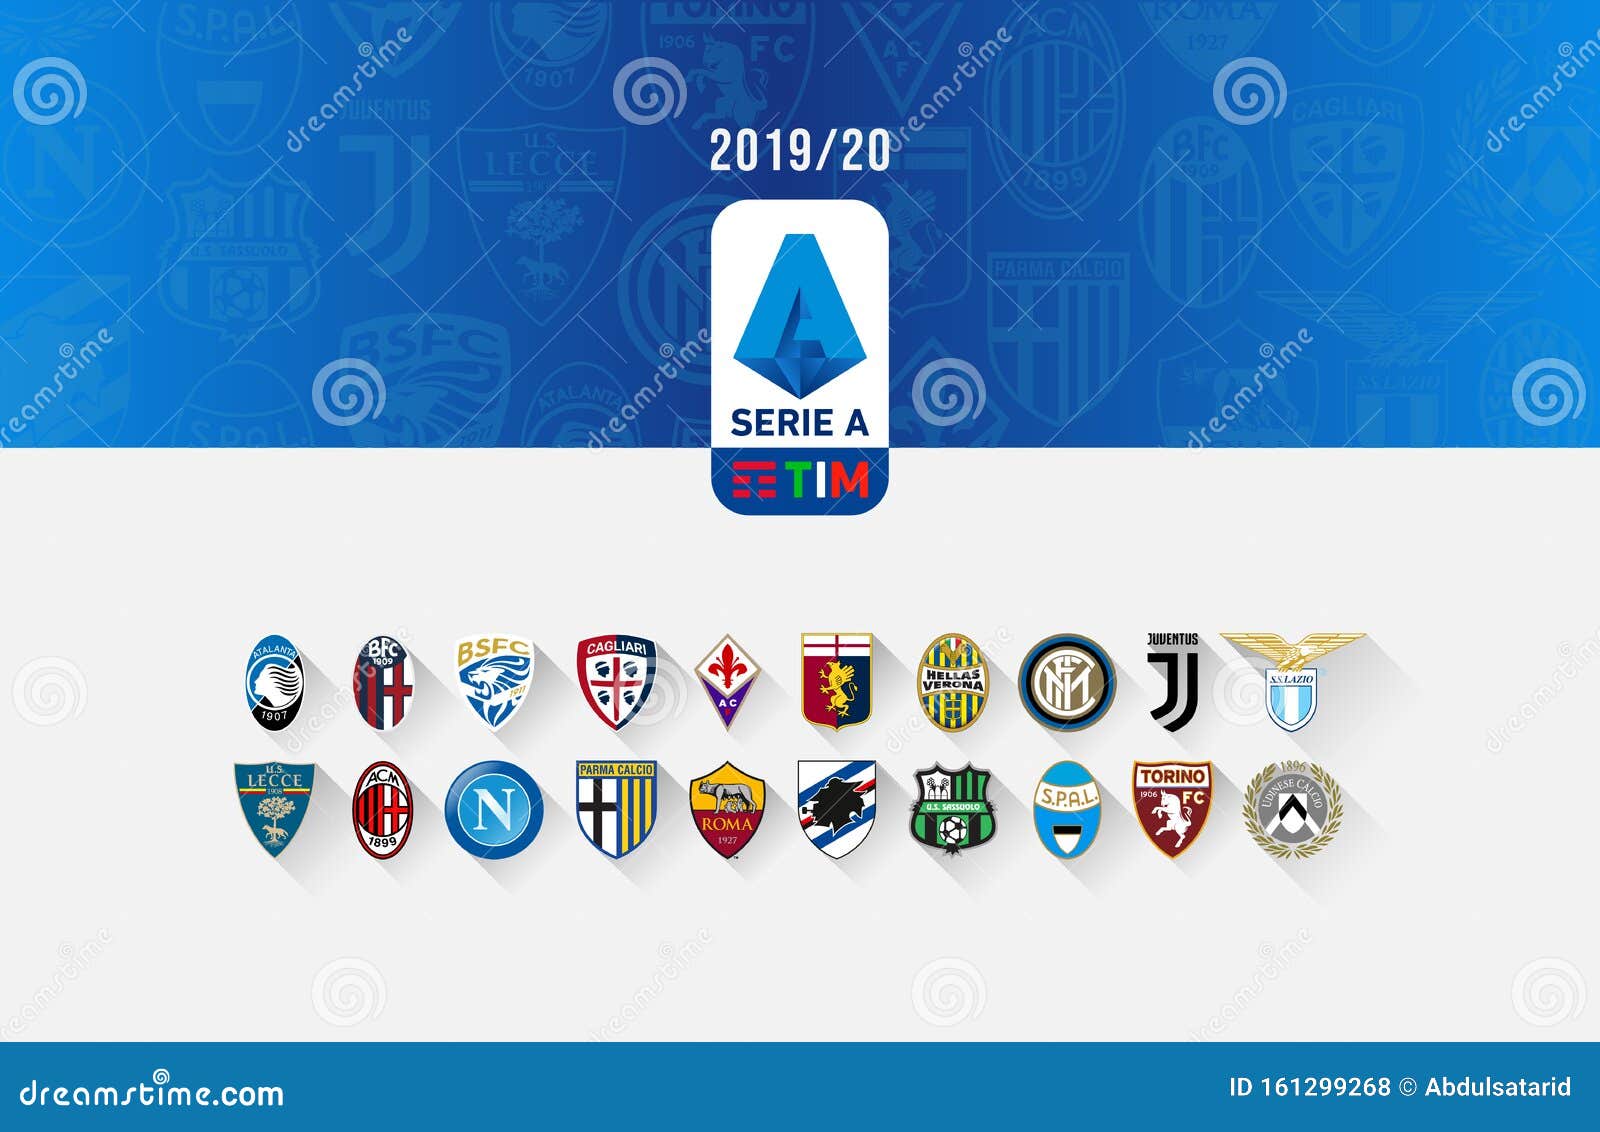 Tabela do campeonato italiano Serie B 2019-2020